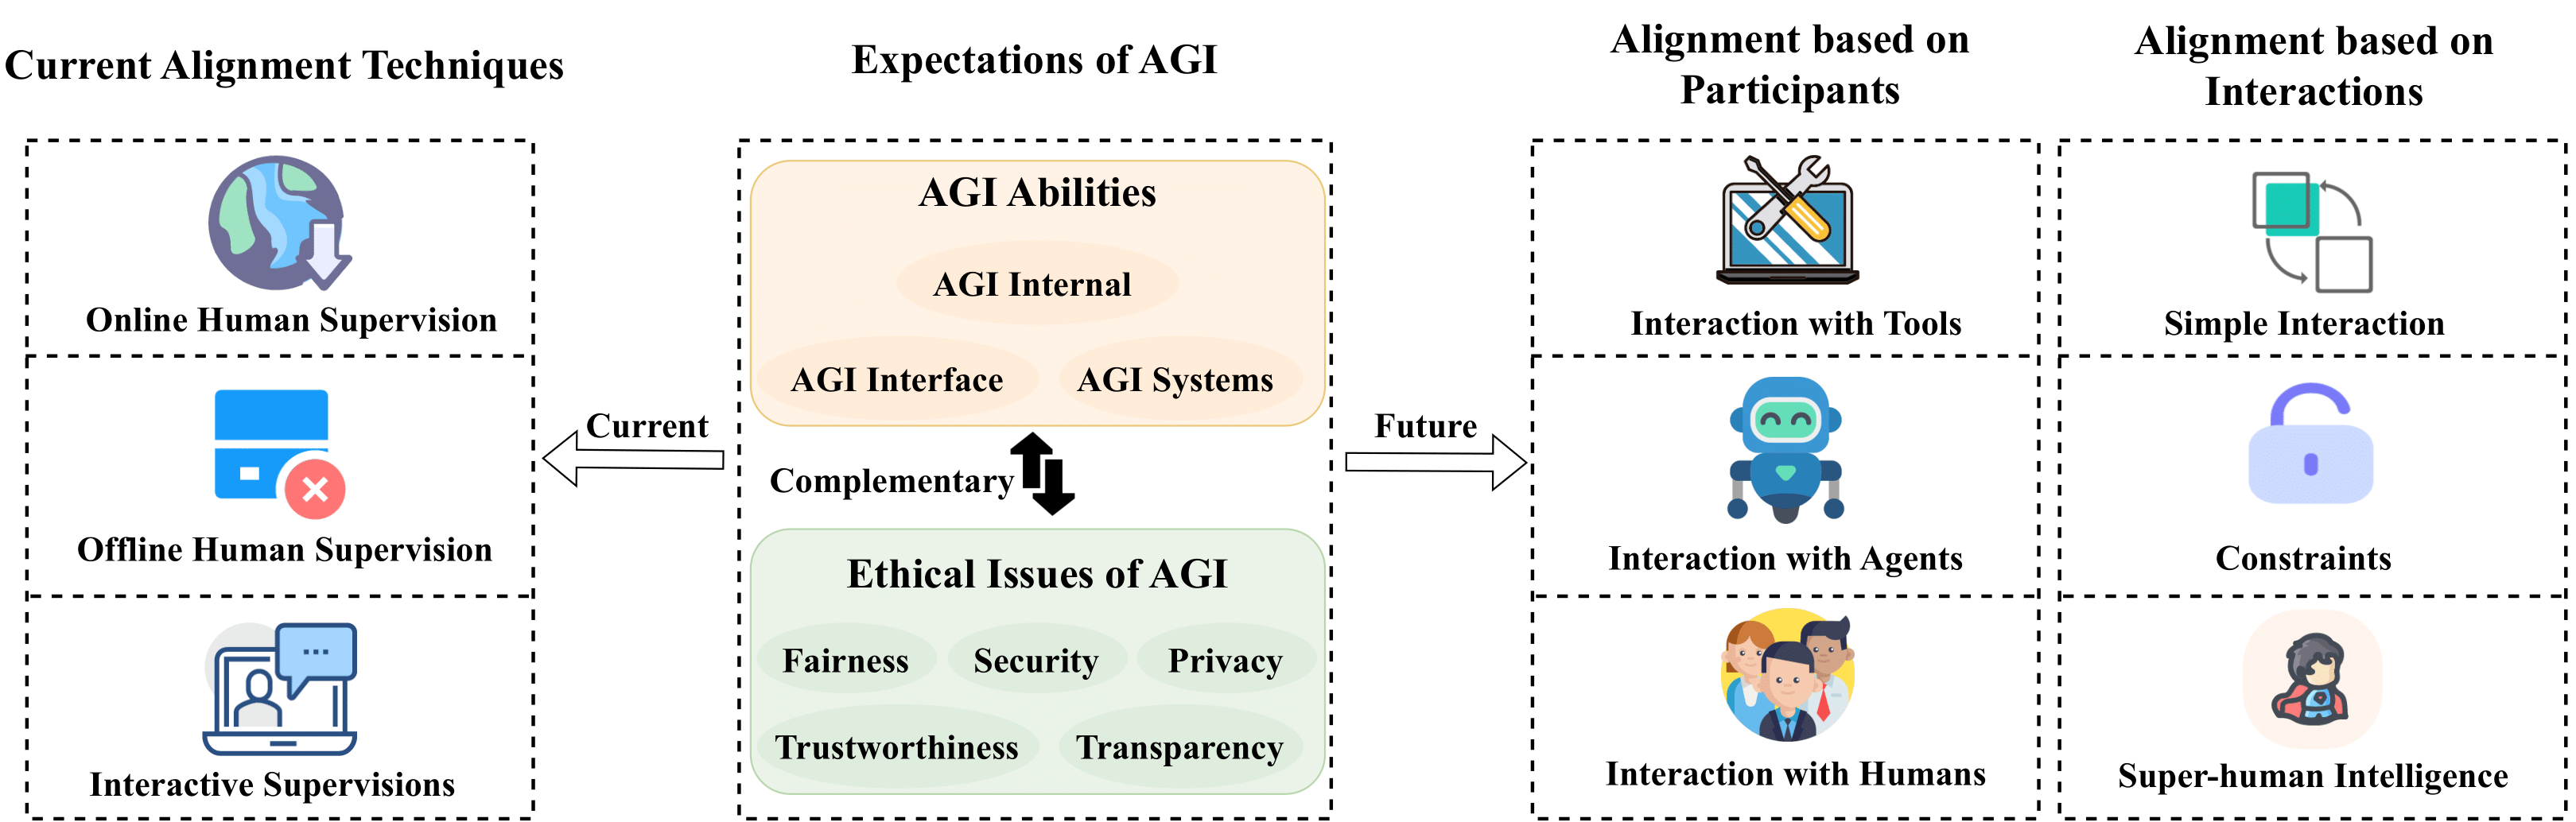 AGI_Alignment-1.png